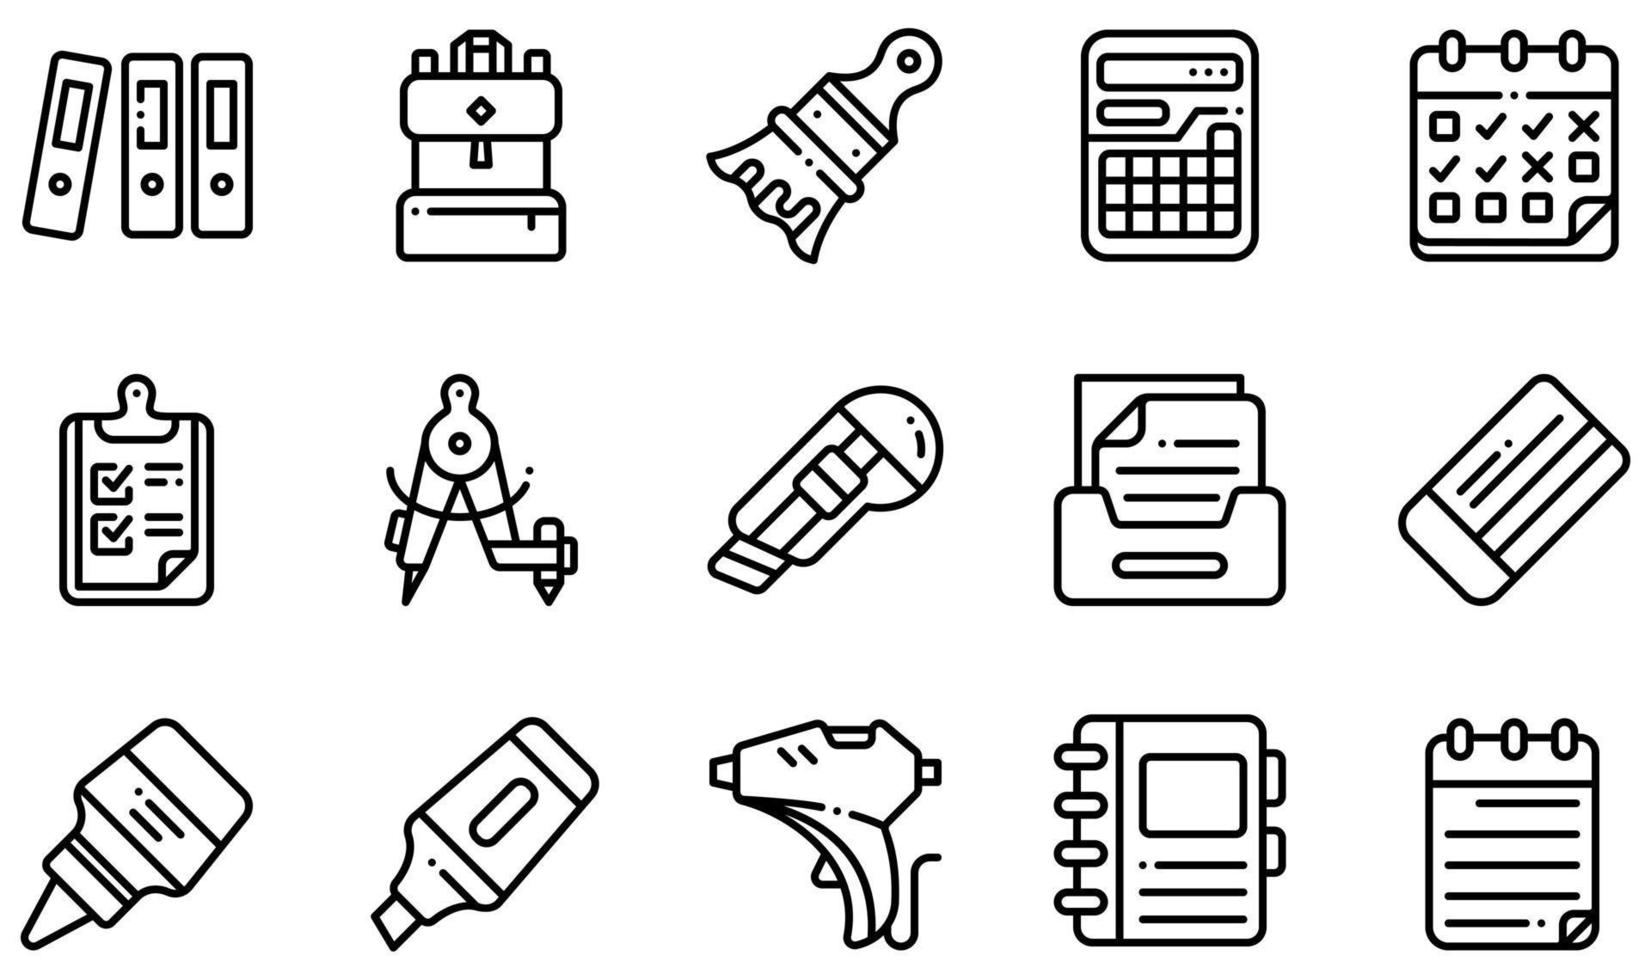 uppsättning vektor ikoner relaterade till brevpapper. innehåller sådana ikoner som arkiv, ryggsäck, kalkylator, urklipp, skärare, lim och mer.